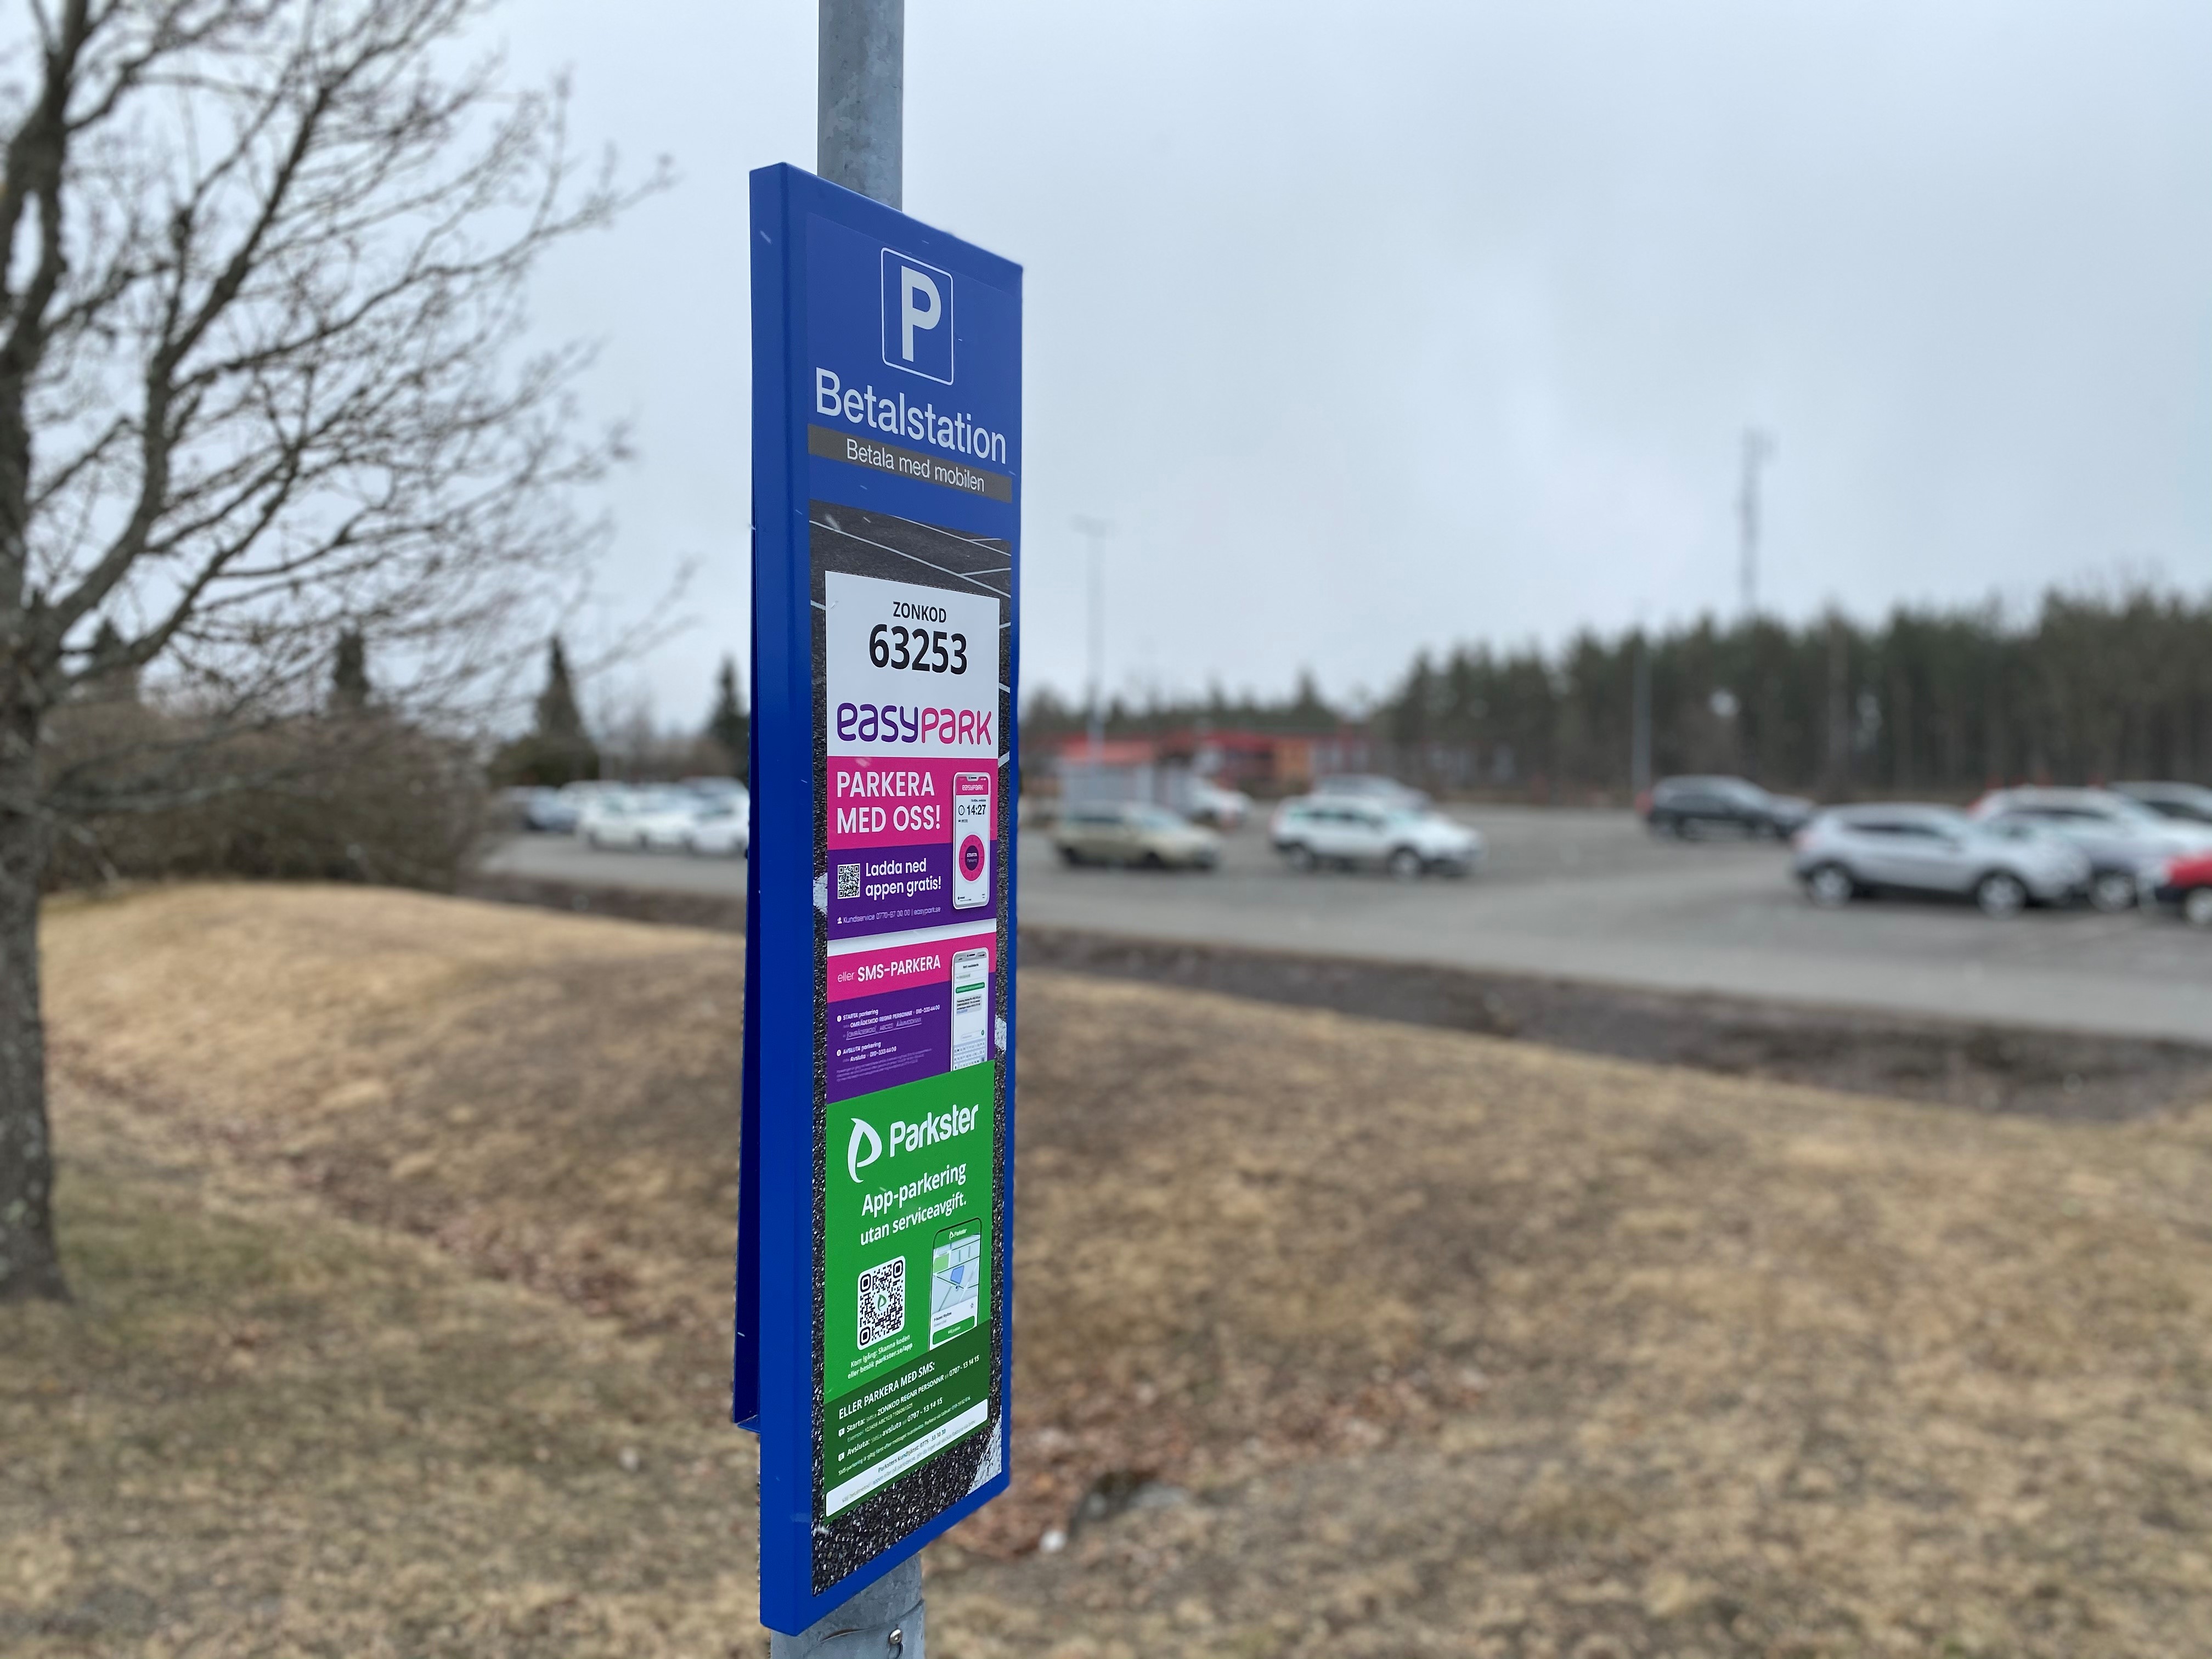 Skylt med information angående betalning av bilparkering på Jönköping Airport.